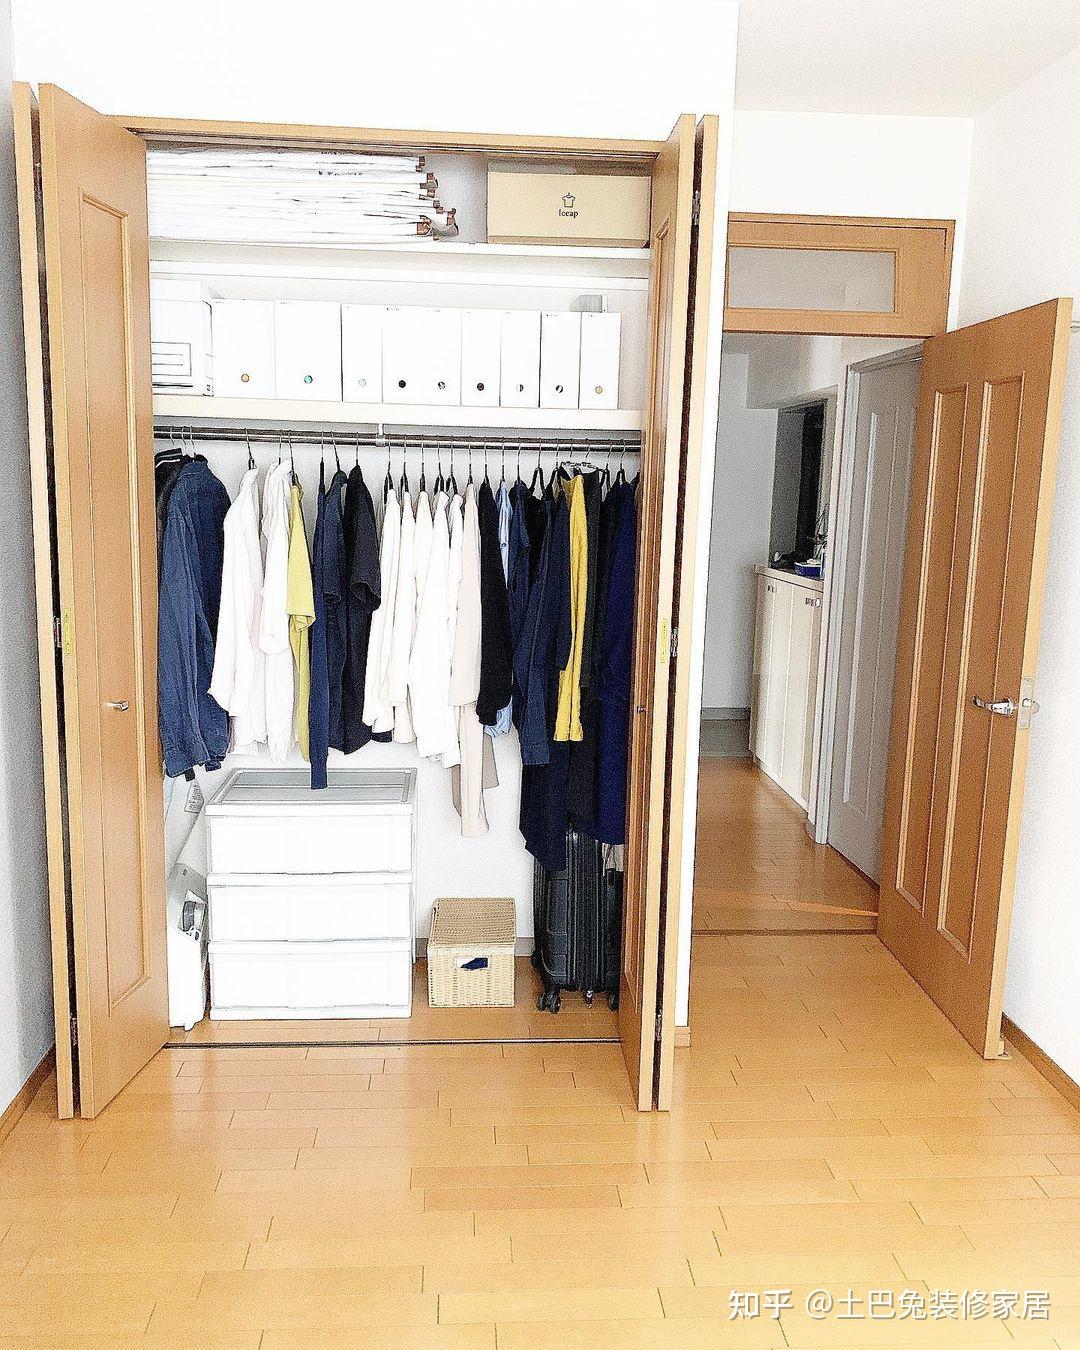 其实这种壁橱衣柜并不是什么新的概念,日本的卧室衣柜基本上都是这样